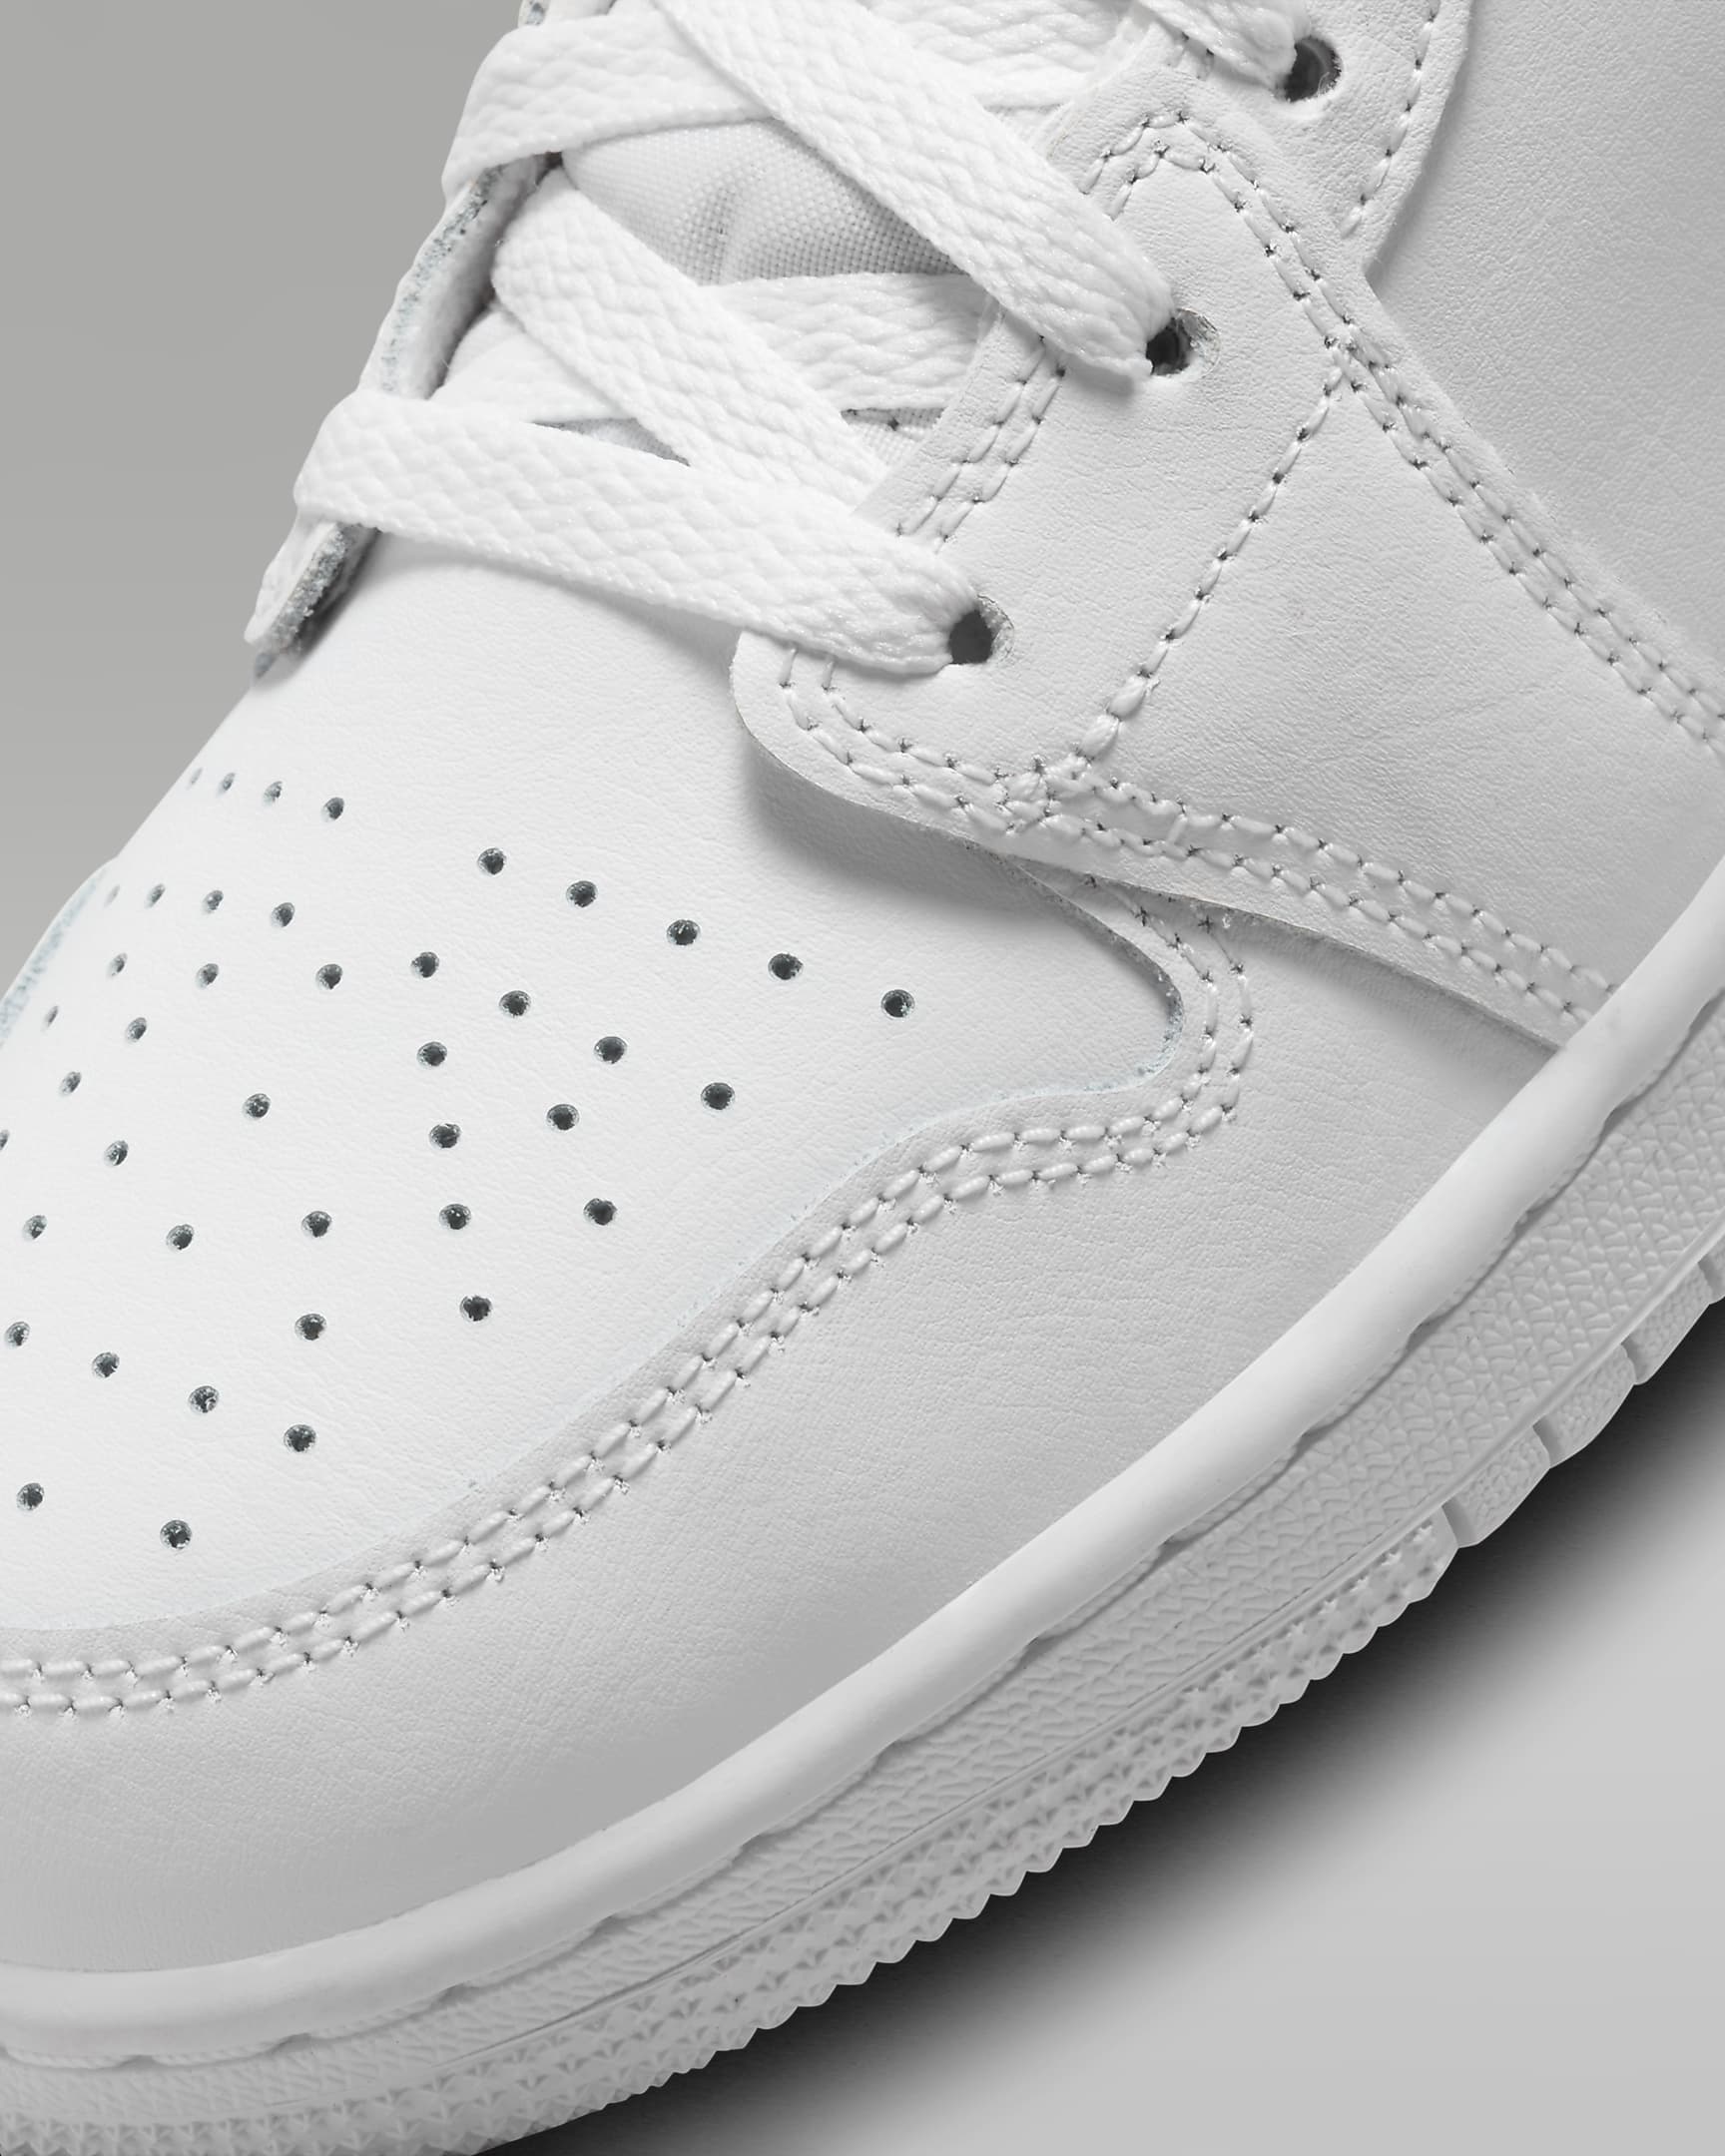 Jordan 1 Mid Schuh für ältere Kinder - Weiß/Weiß/Weiß